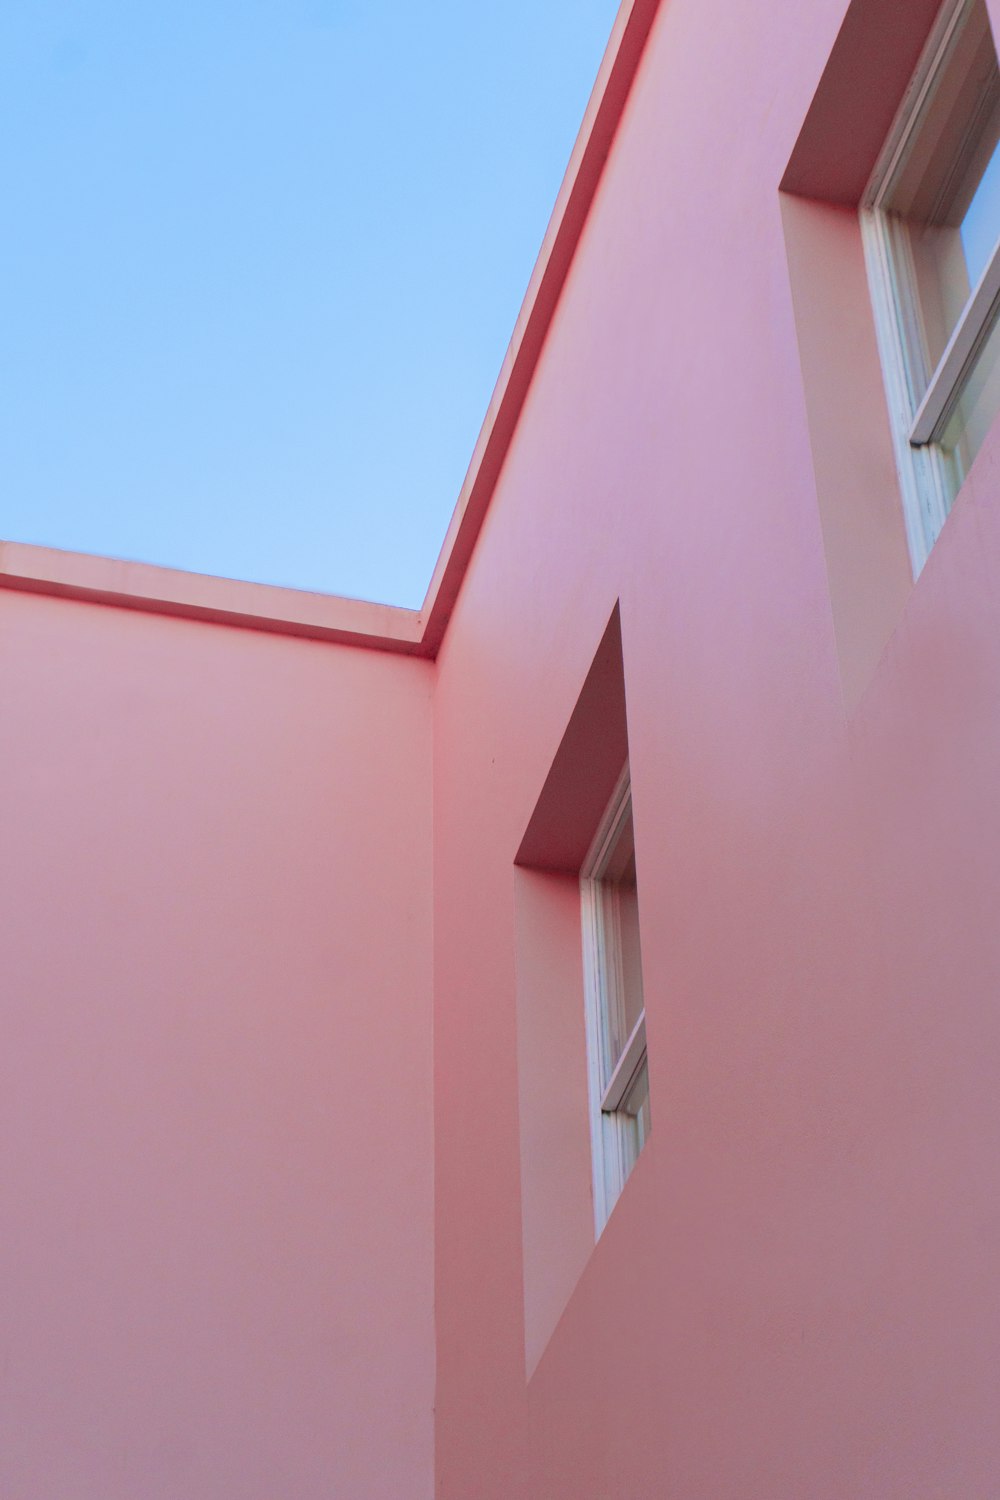 Construction en béton rose sous le ciel bleu pendant la journée